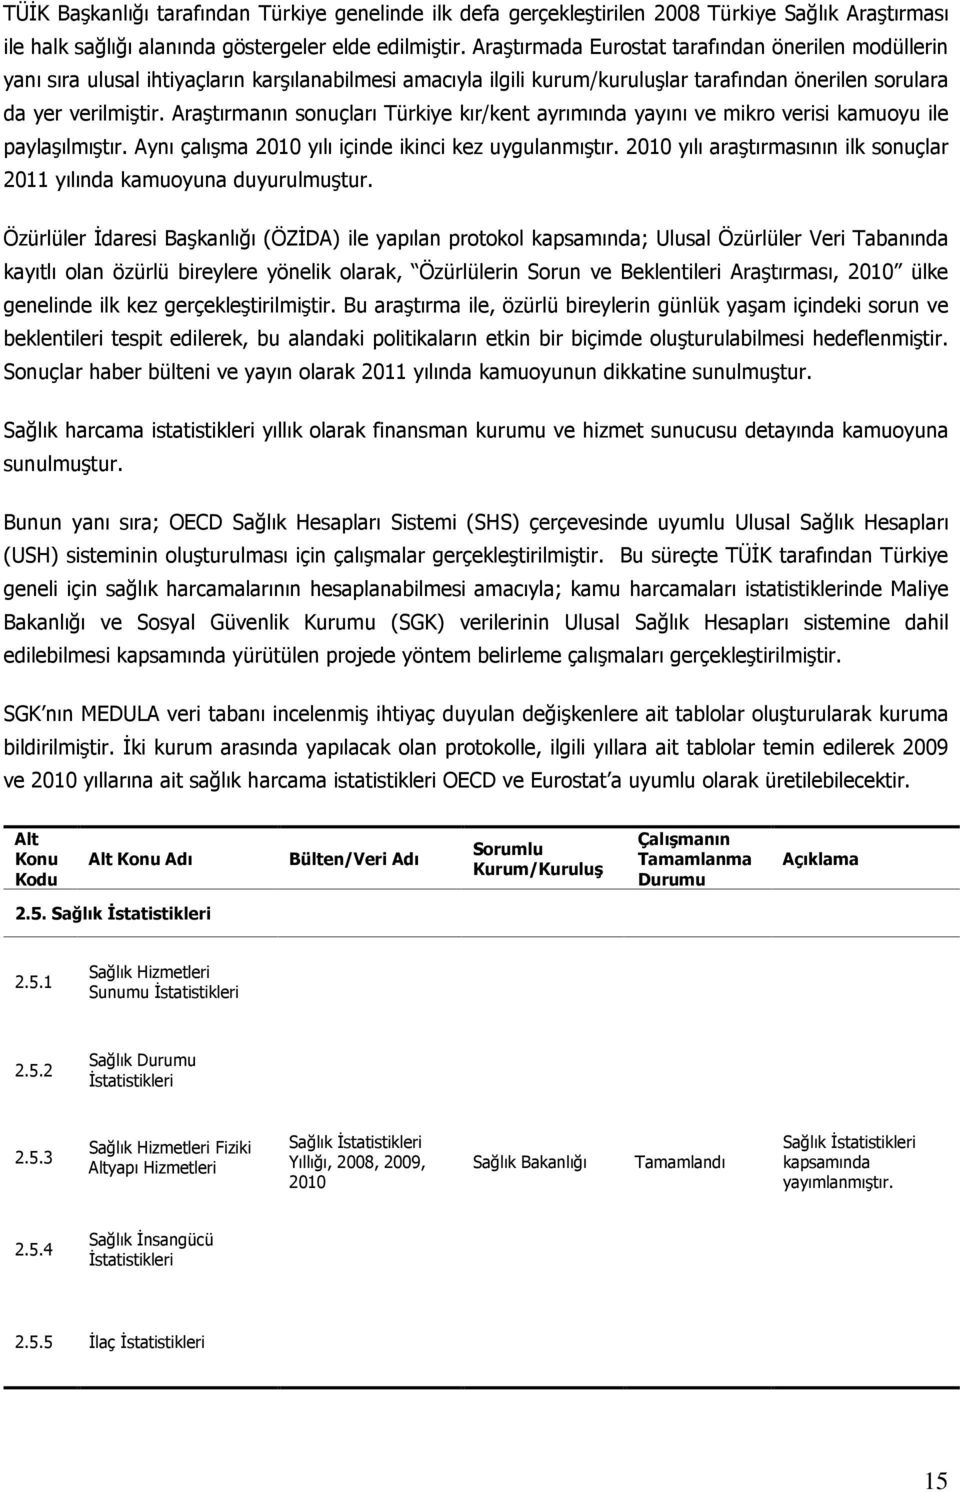 Araştırmanın sonuçları Türkiye kır/kent ayrımında yayını ve mikro verisi kamuoyu ile paylaşılmıştır. Aynı çalışma 2010 yılı içinde ikinci kez uygulanmıştır.